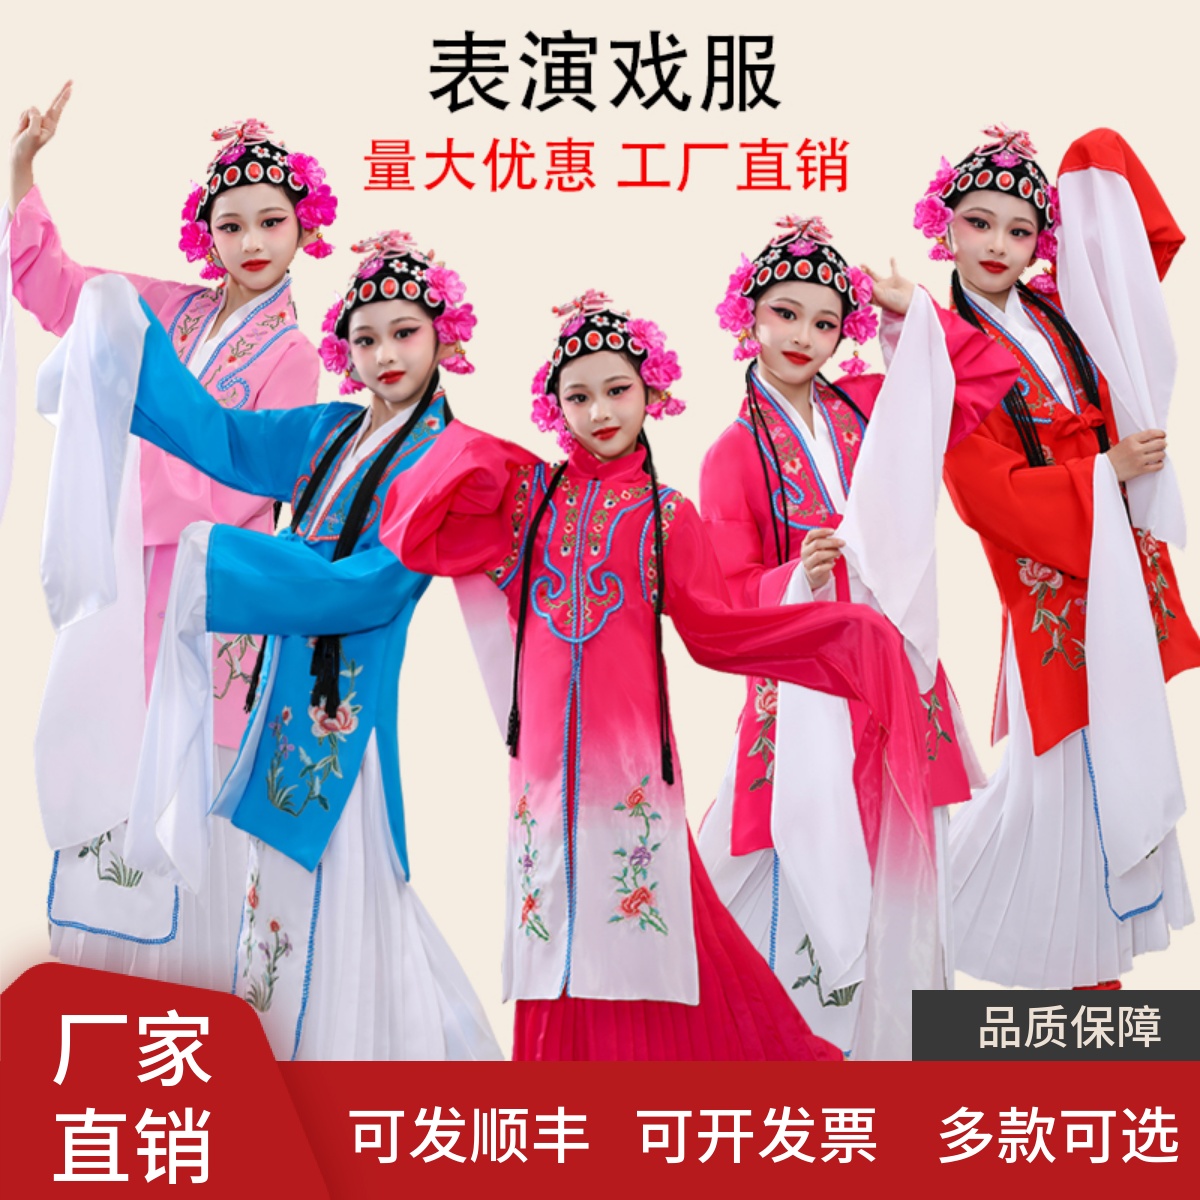 秀场直击DAY2 | 新锐力量与传统文化的碰撞-服装中国国际时装周-服装设计网